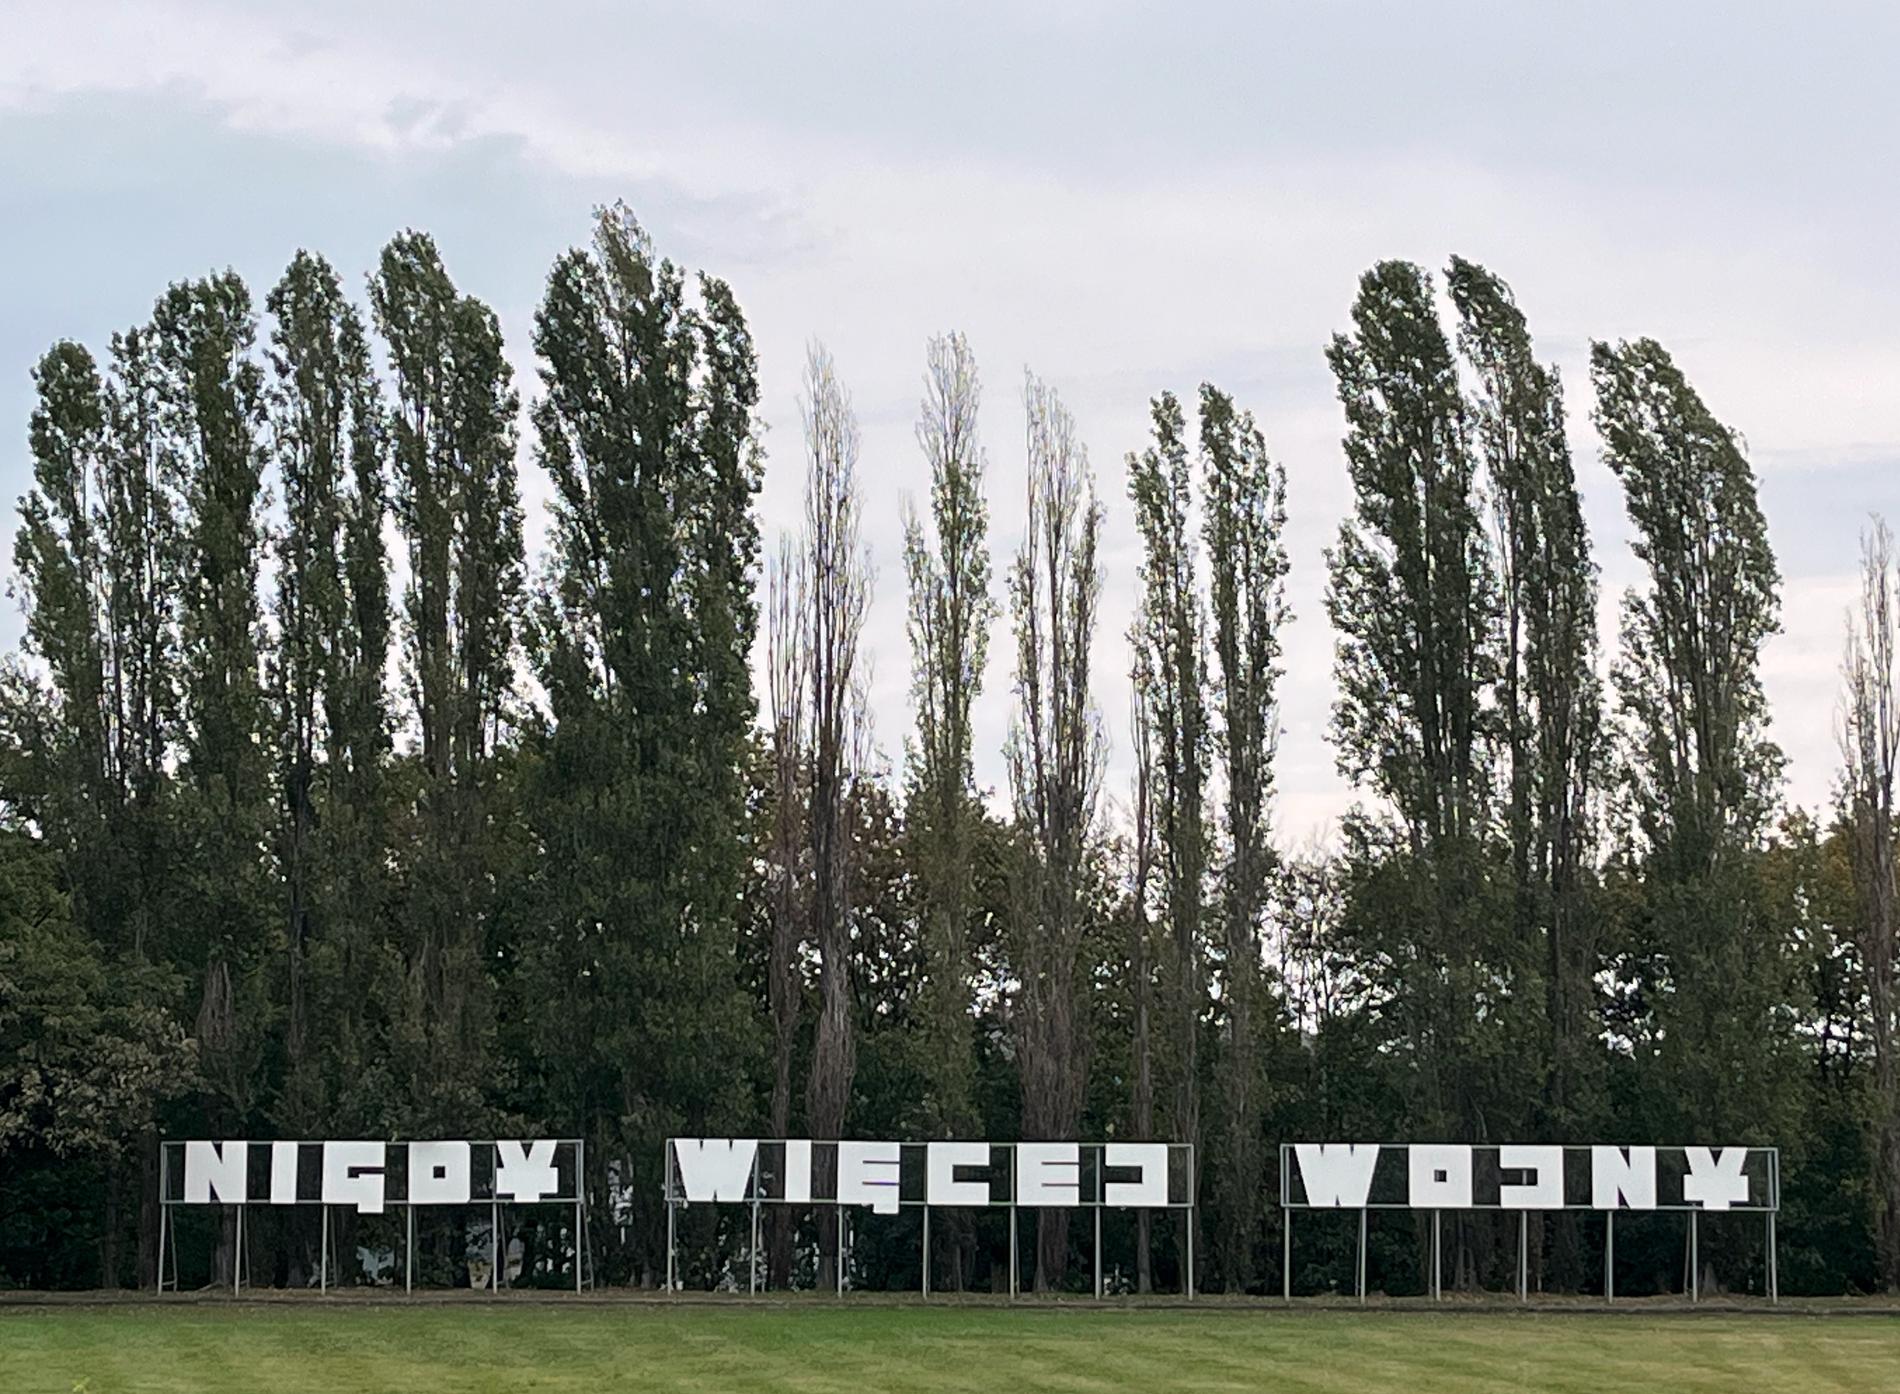 ”Nigdy Więcej Wojny”, polska för Aldrig mera krig, står med meterhöga vita bokstäver i parken i Westerplatte. 